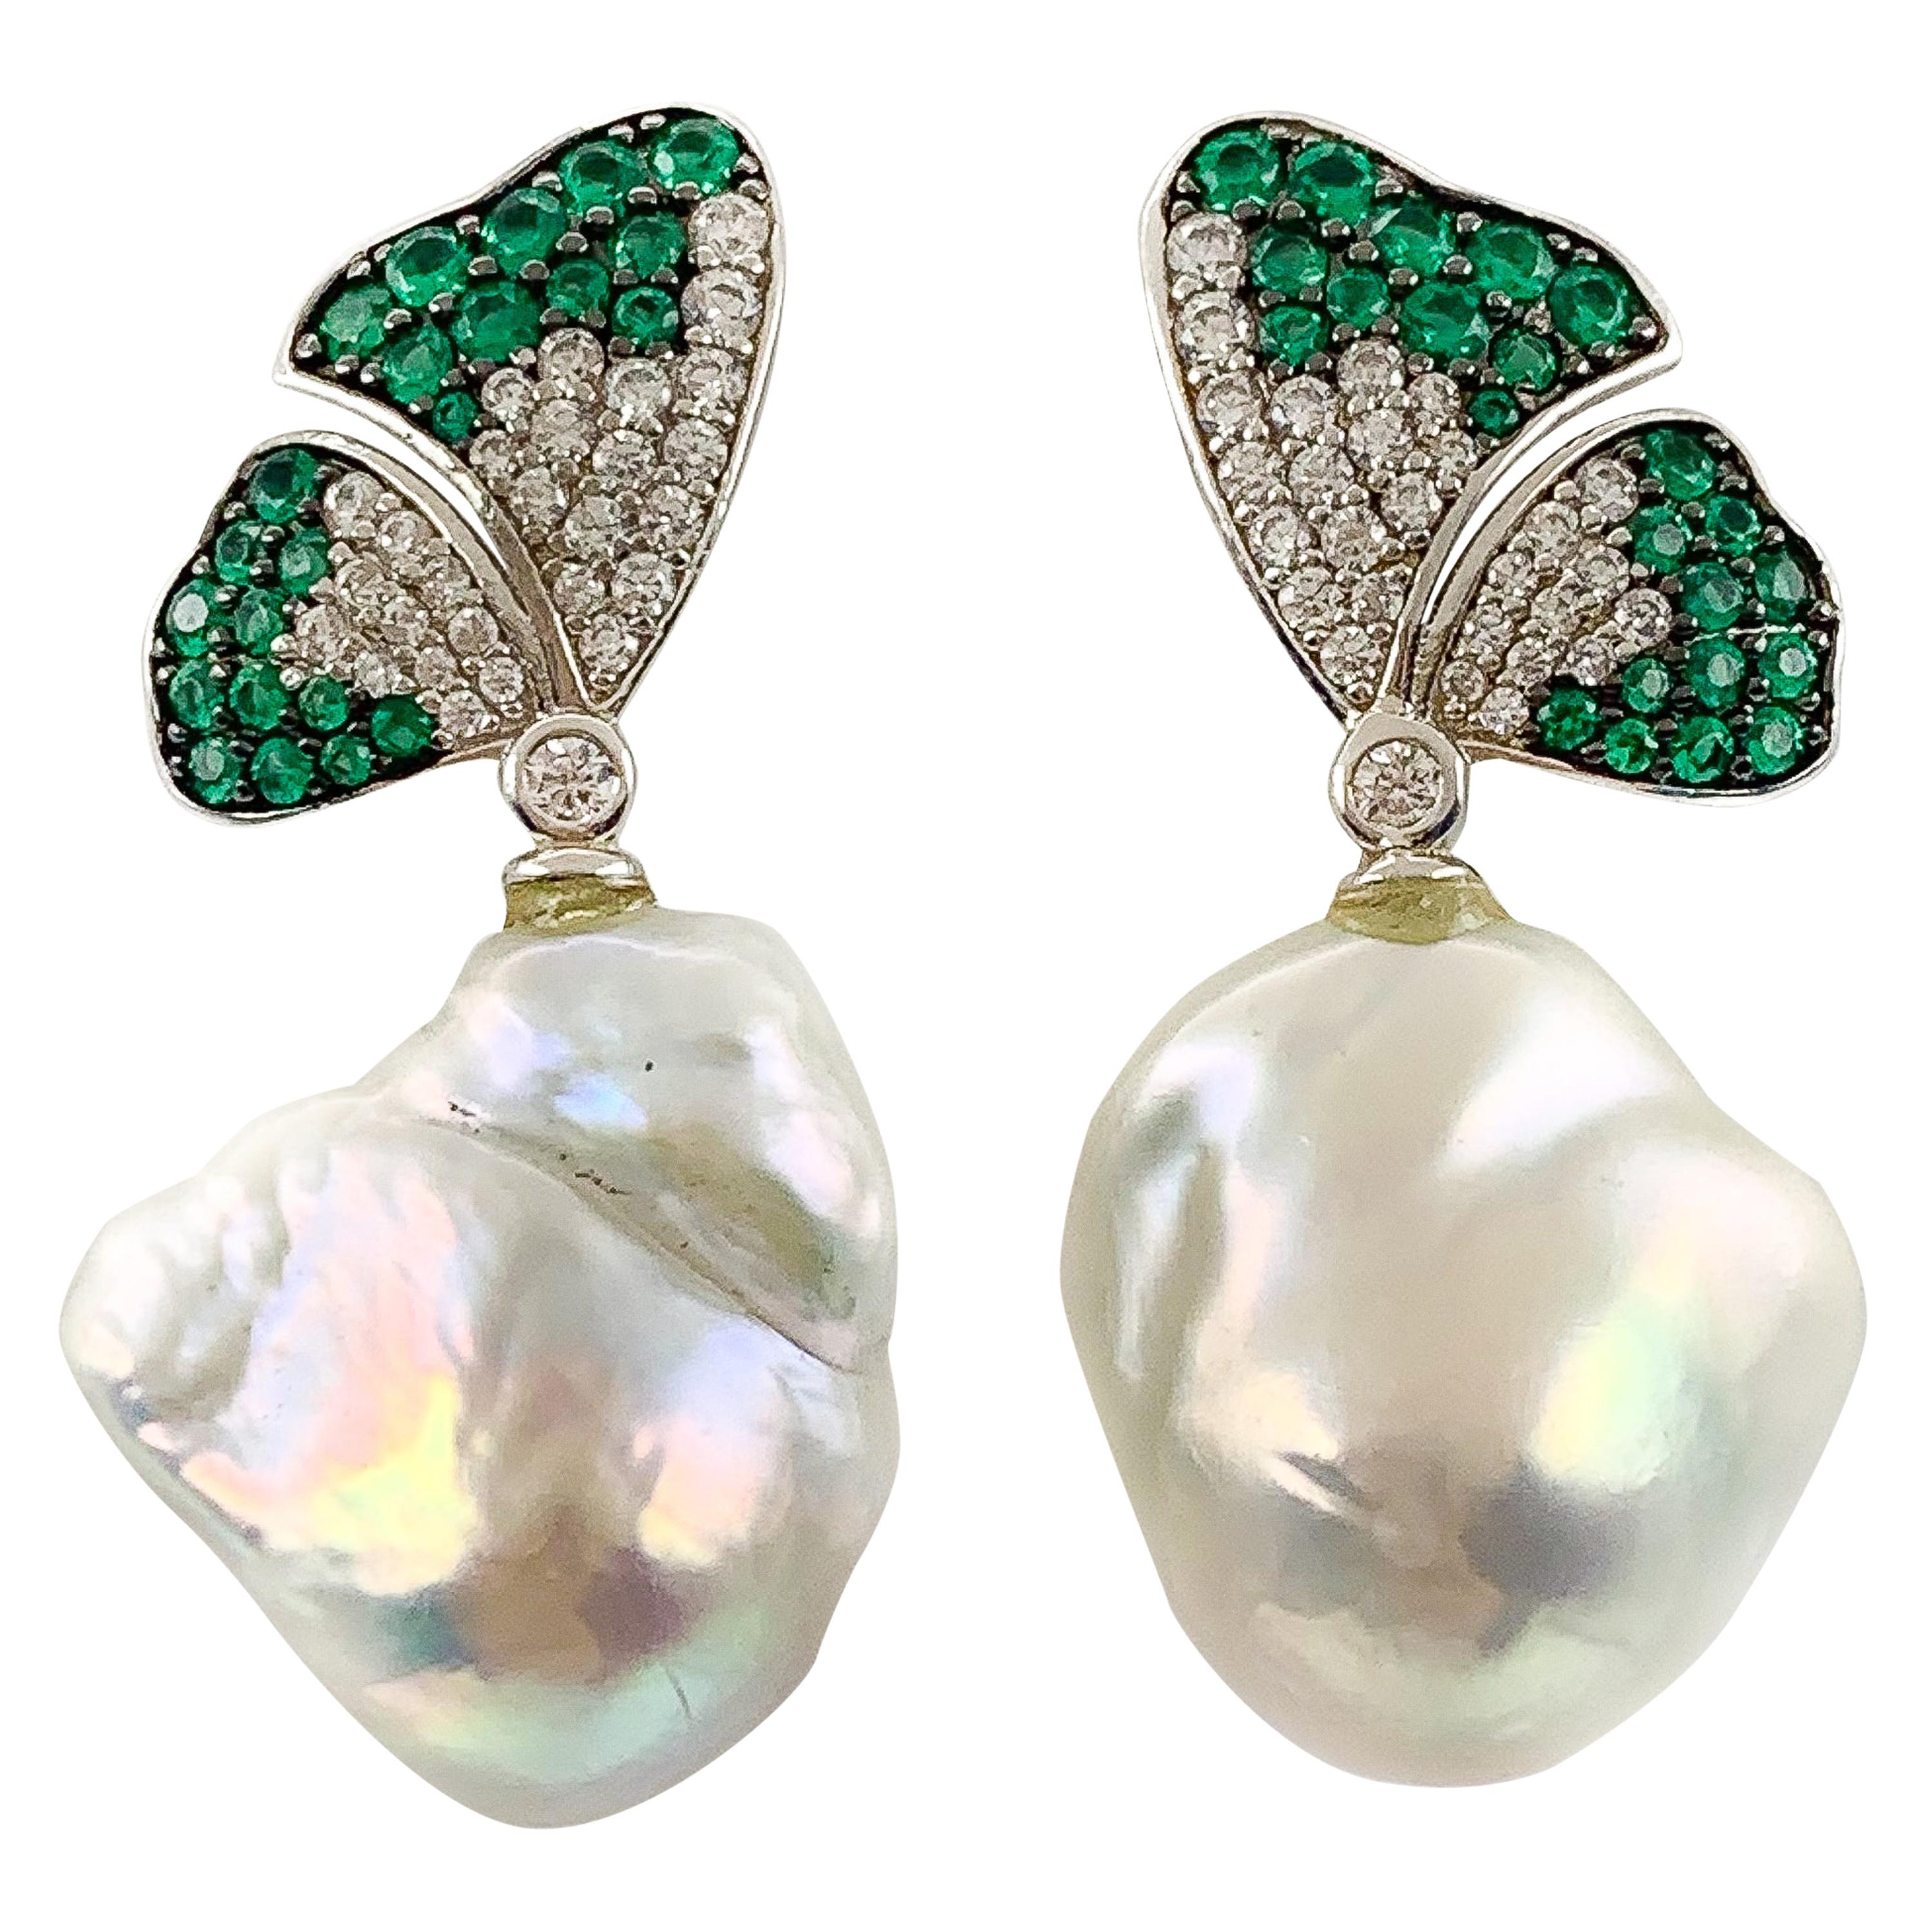 Stone & Pearl Butterfly Pendant Earrings